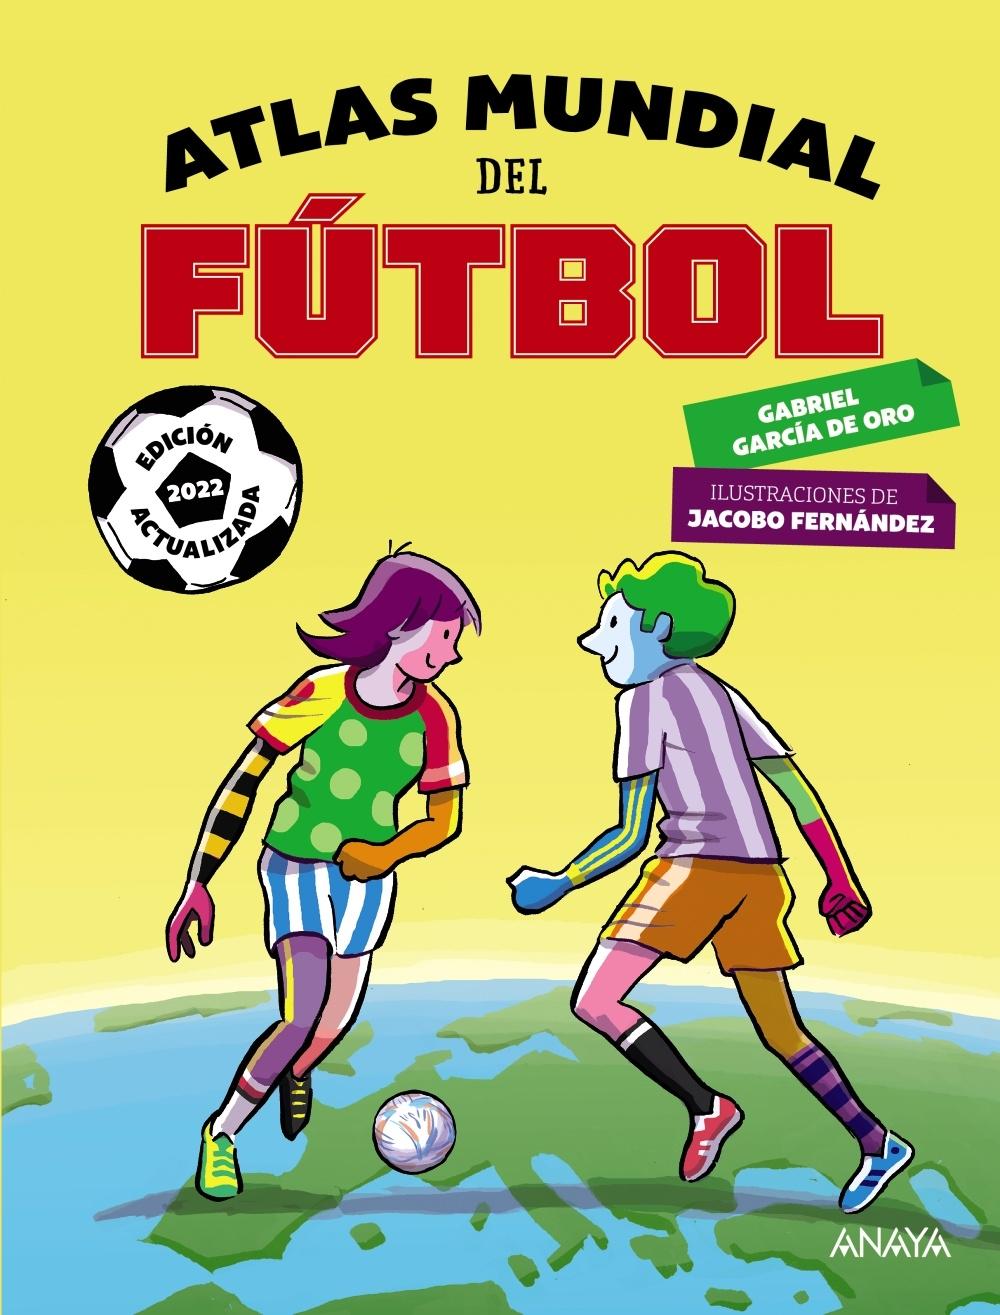 Atlas Mundial del Fútbol "Edición 2022"